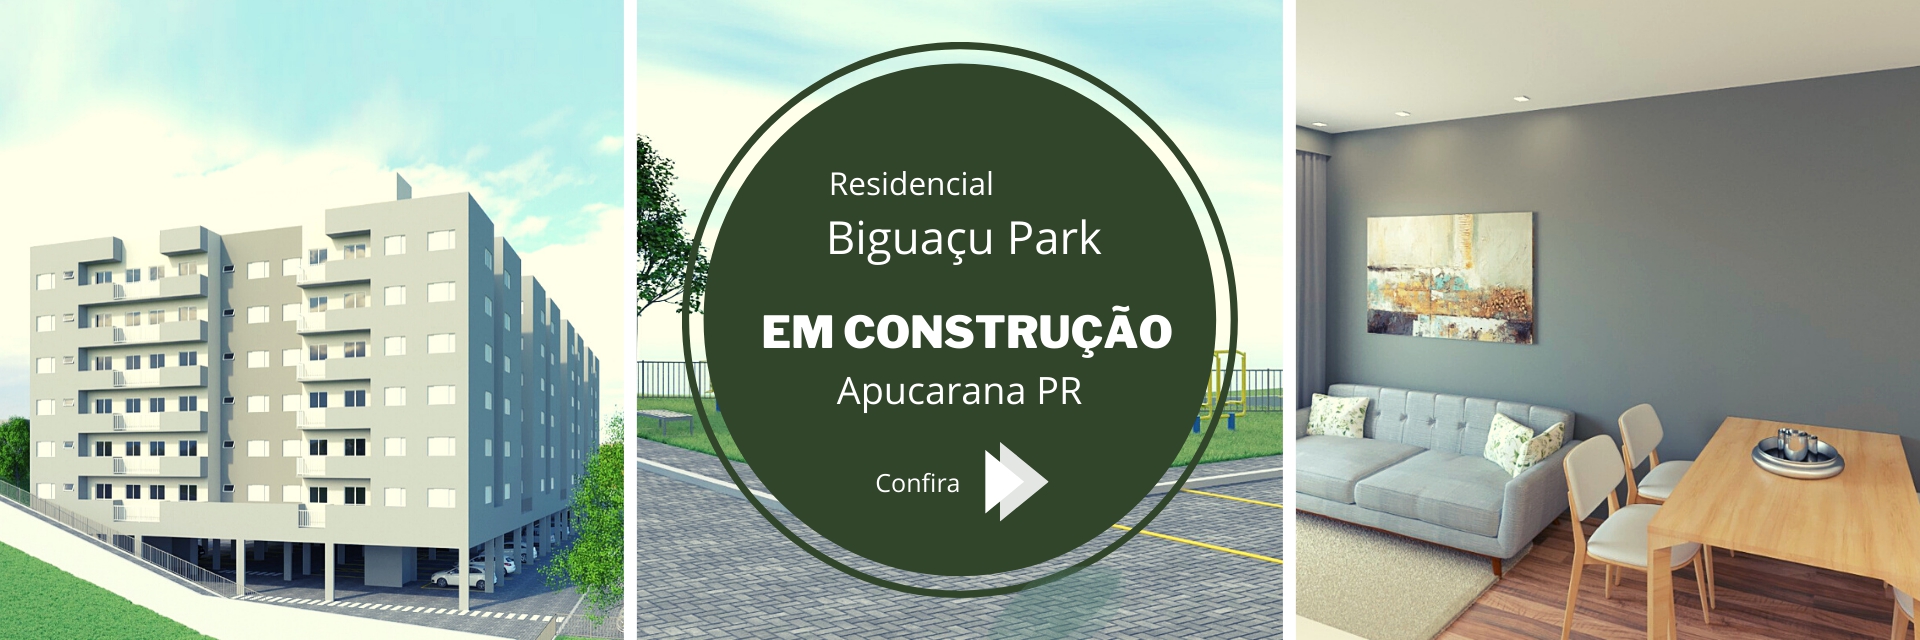 Biguaçu Park